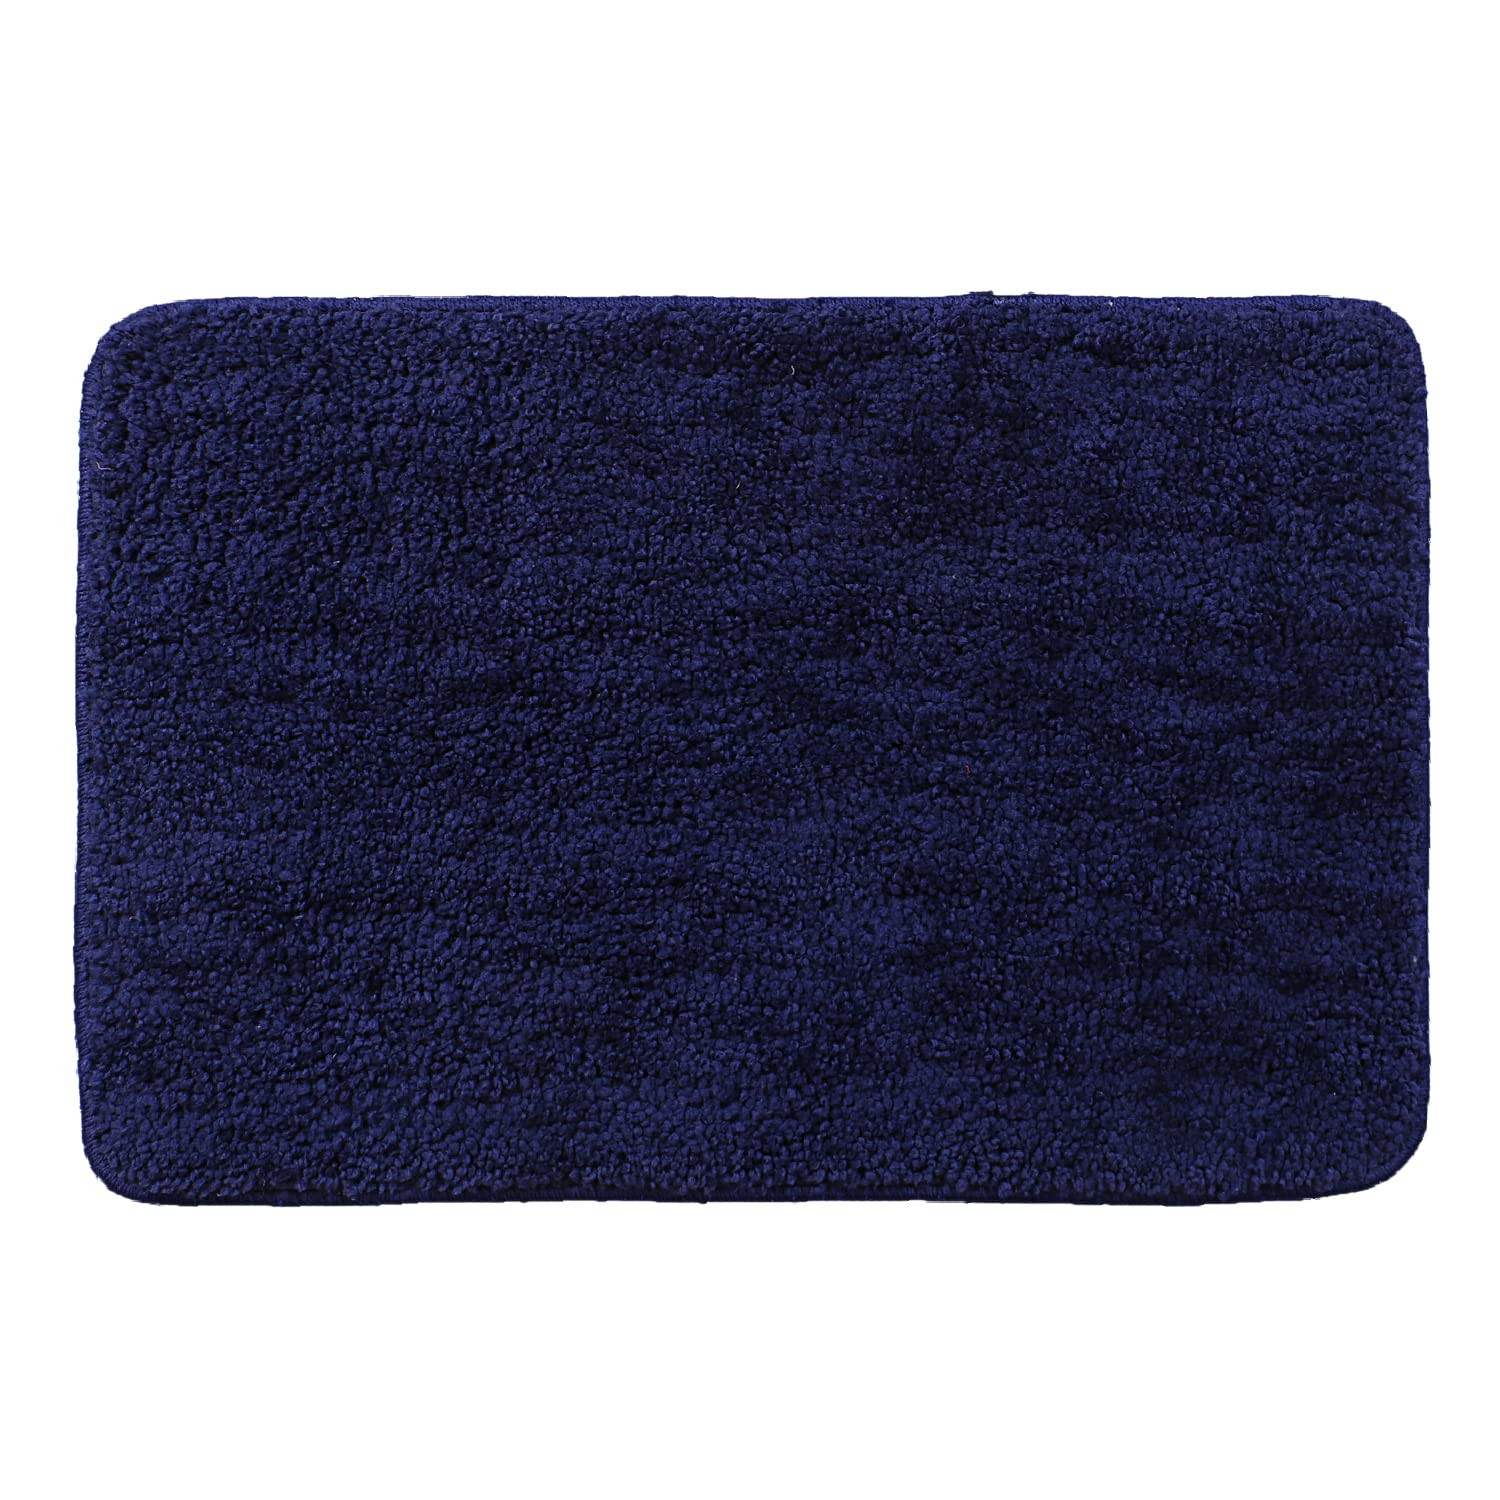 Kuber Industries Microfiber Shaggy Doormats|Non-Slip Water Absorbant Floor mat|Entrance Mat for Kitchen,Bedside,Door,Living,Prayer Room,60x40 cm,Pack of 2 (Blue & Gray)